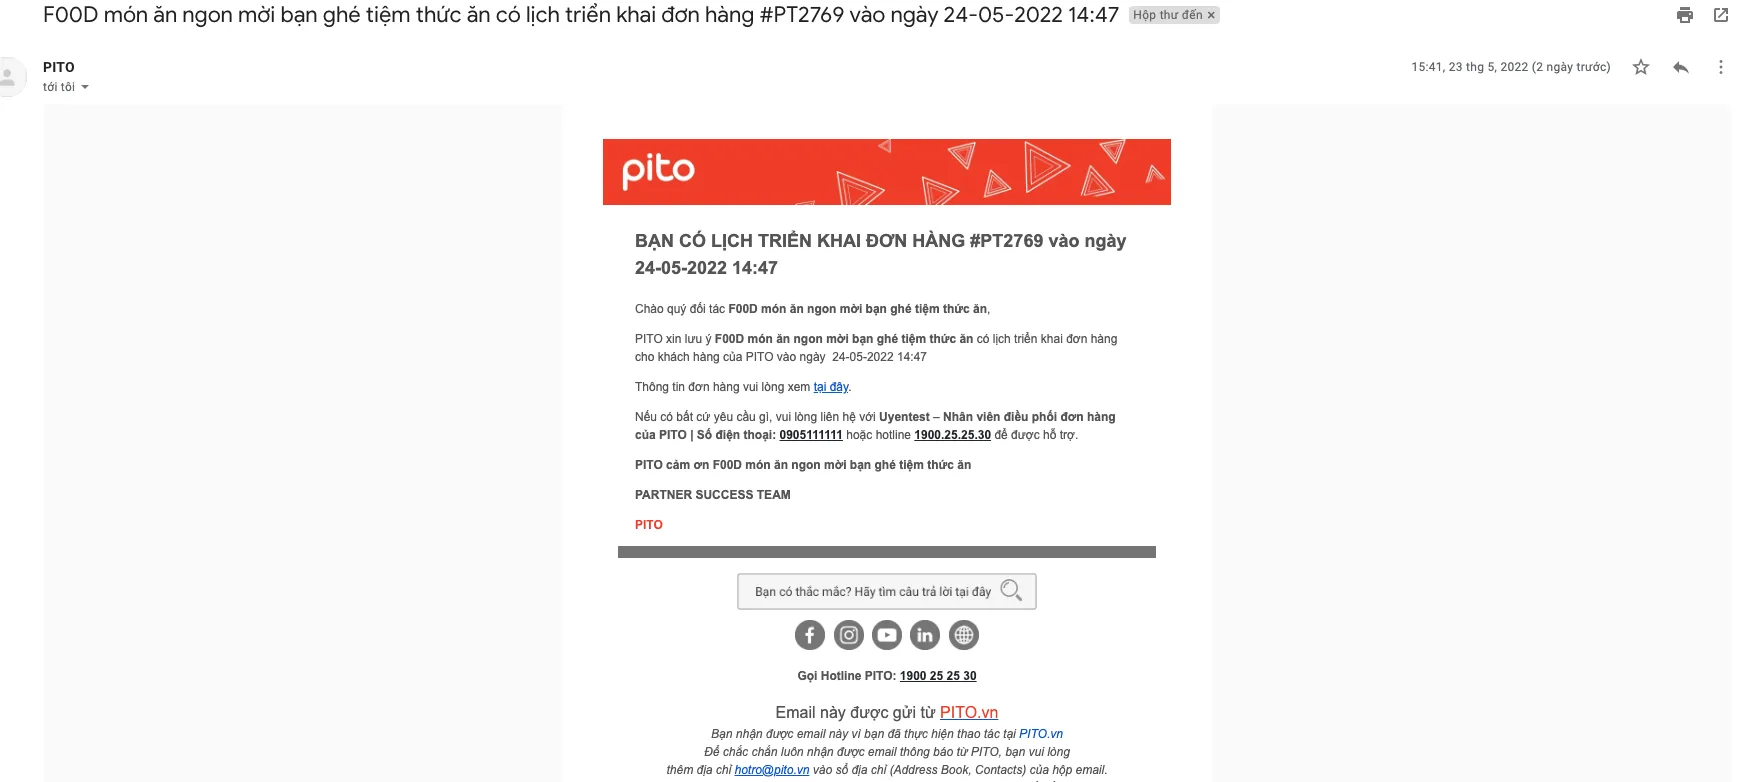 PITO Partner Nhắc nhở đơn hàng